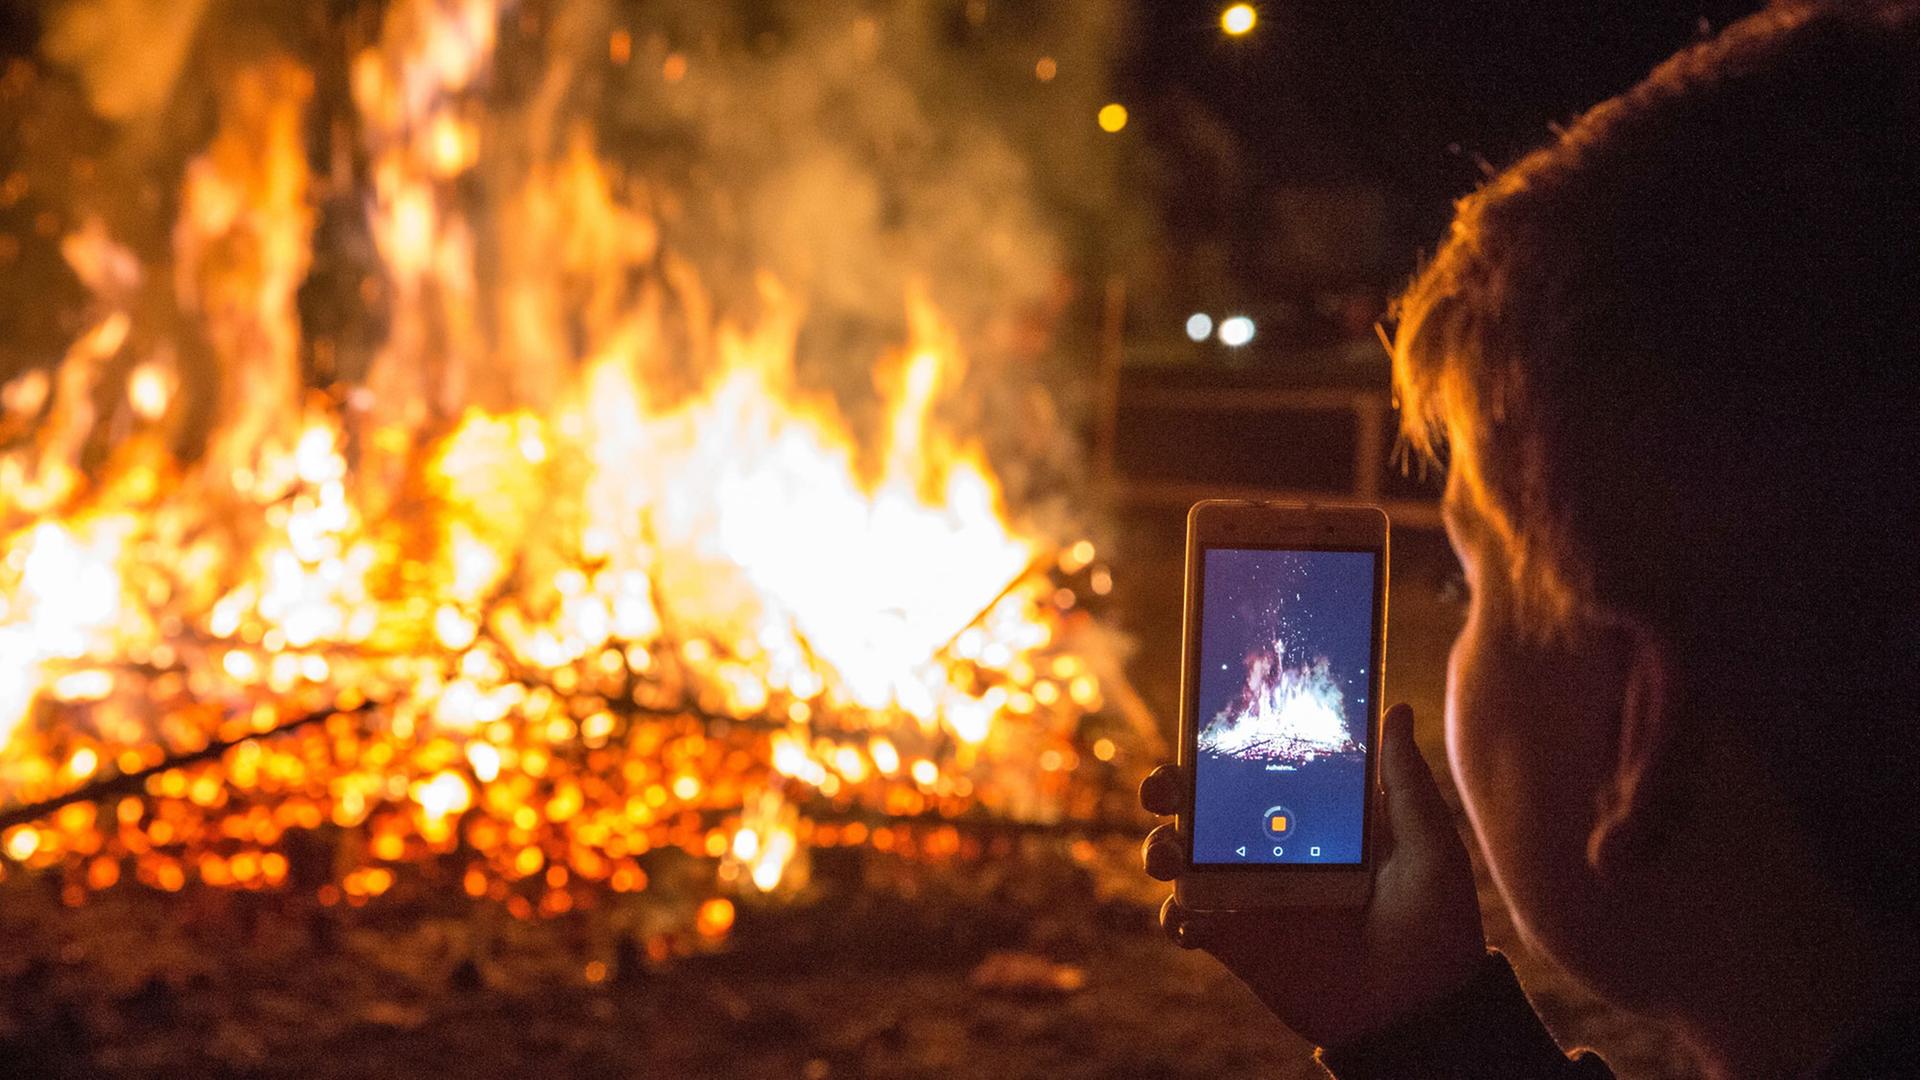 Eine Person filmt mit dem Handy brennende Christbäume auf einem Scheiterhaufen bei Nacht.